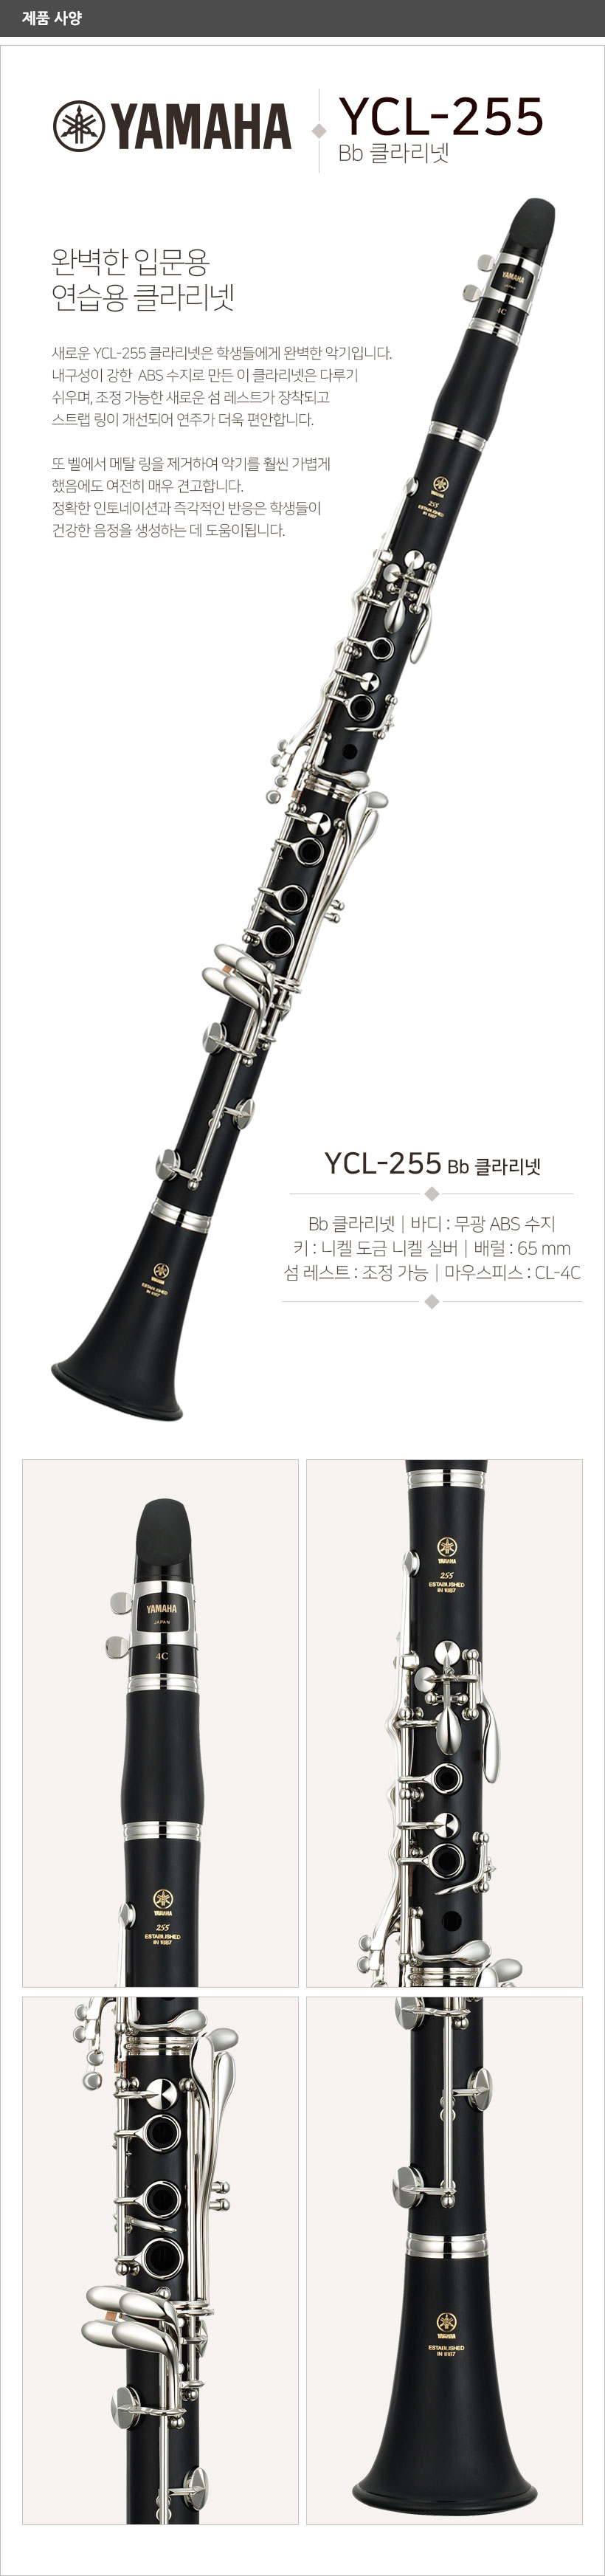 YCL-255 제품 사양